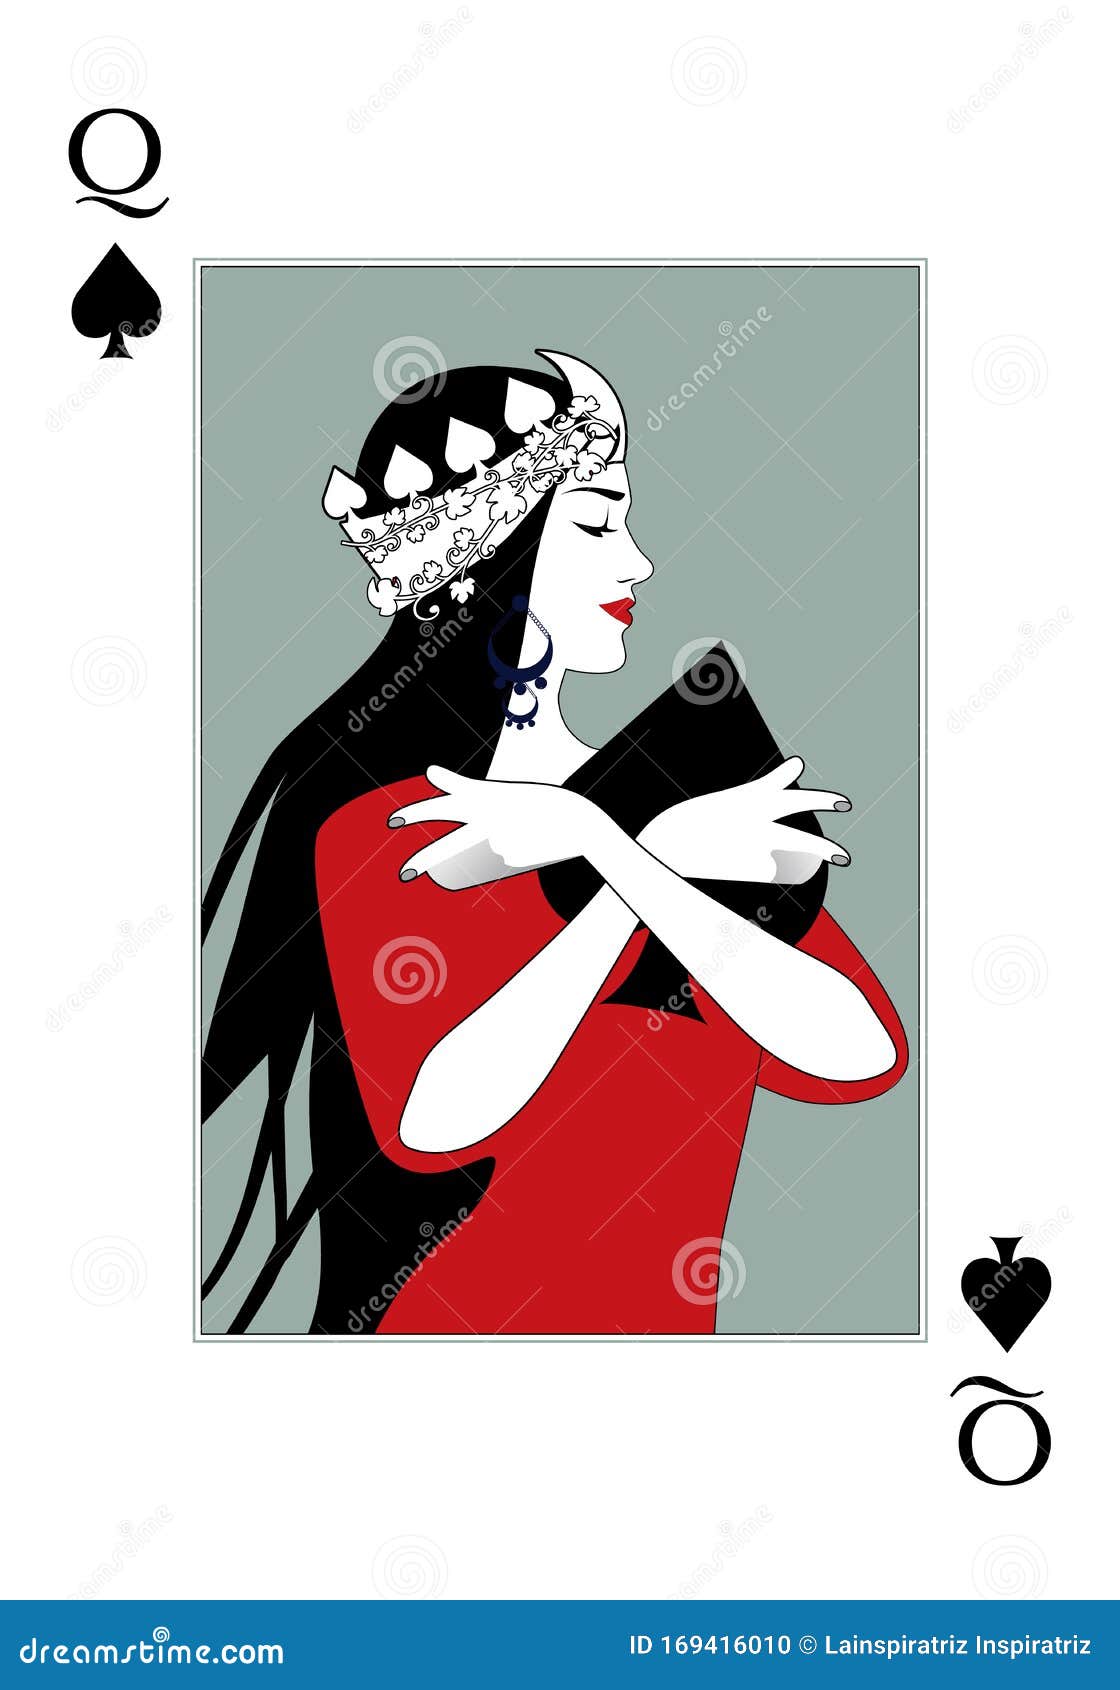 rainha com coroa e vestido vermelho. ilustração vetorial de cartas de jogar.  rainha das cartas de